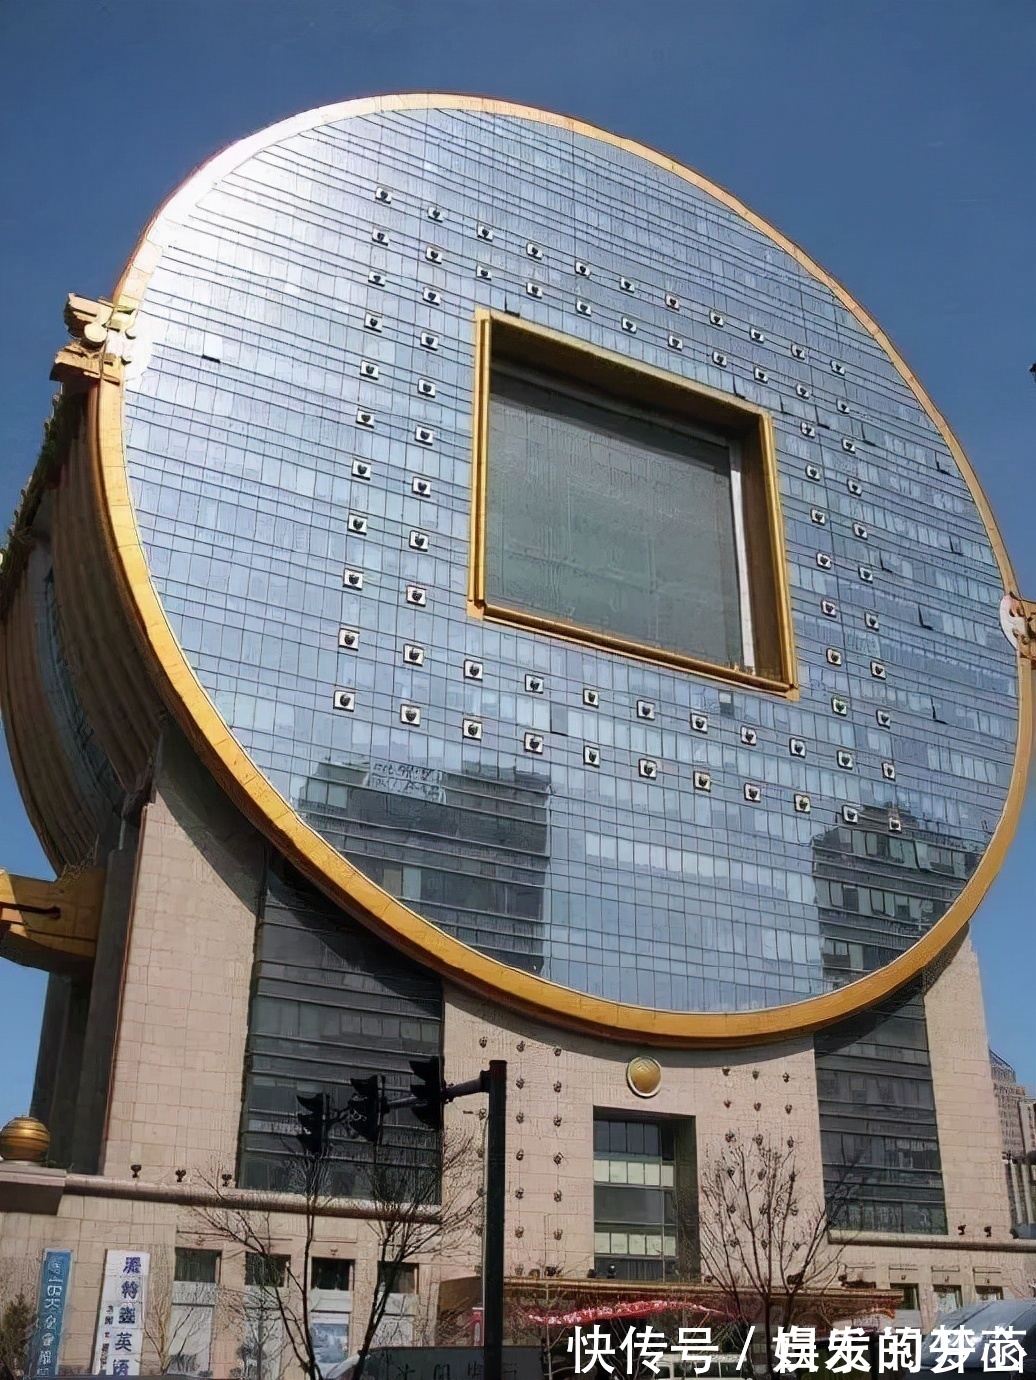 |中国奇葩建筑大盘点！怪楼这是盖来搞笑的吗？前方高能